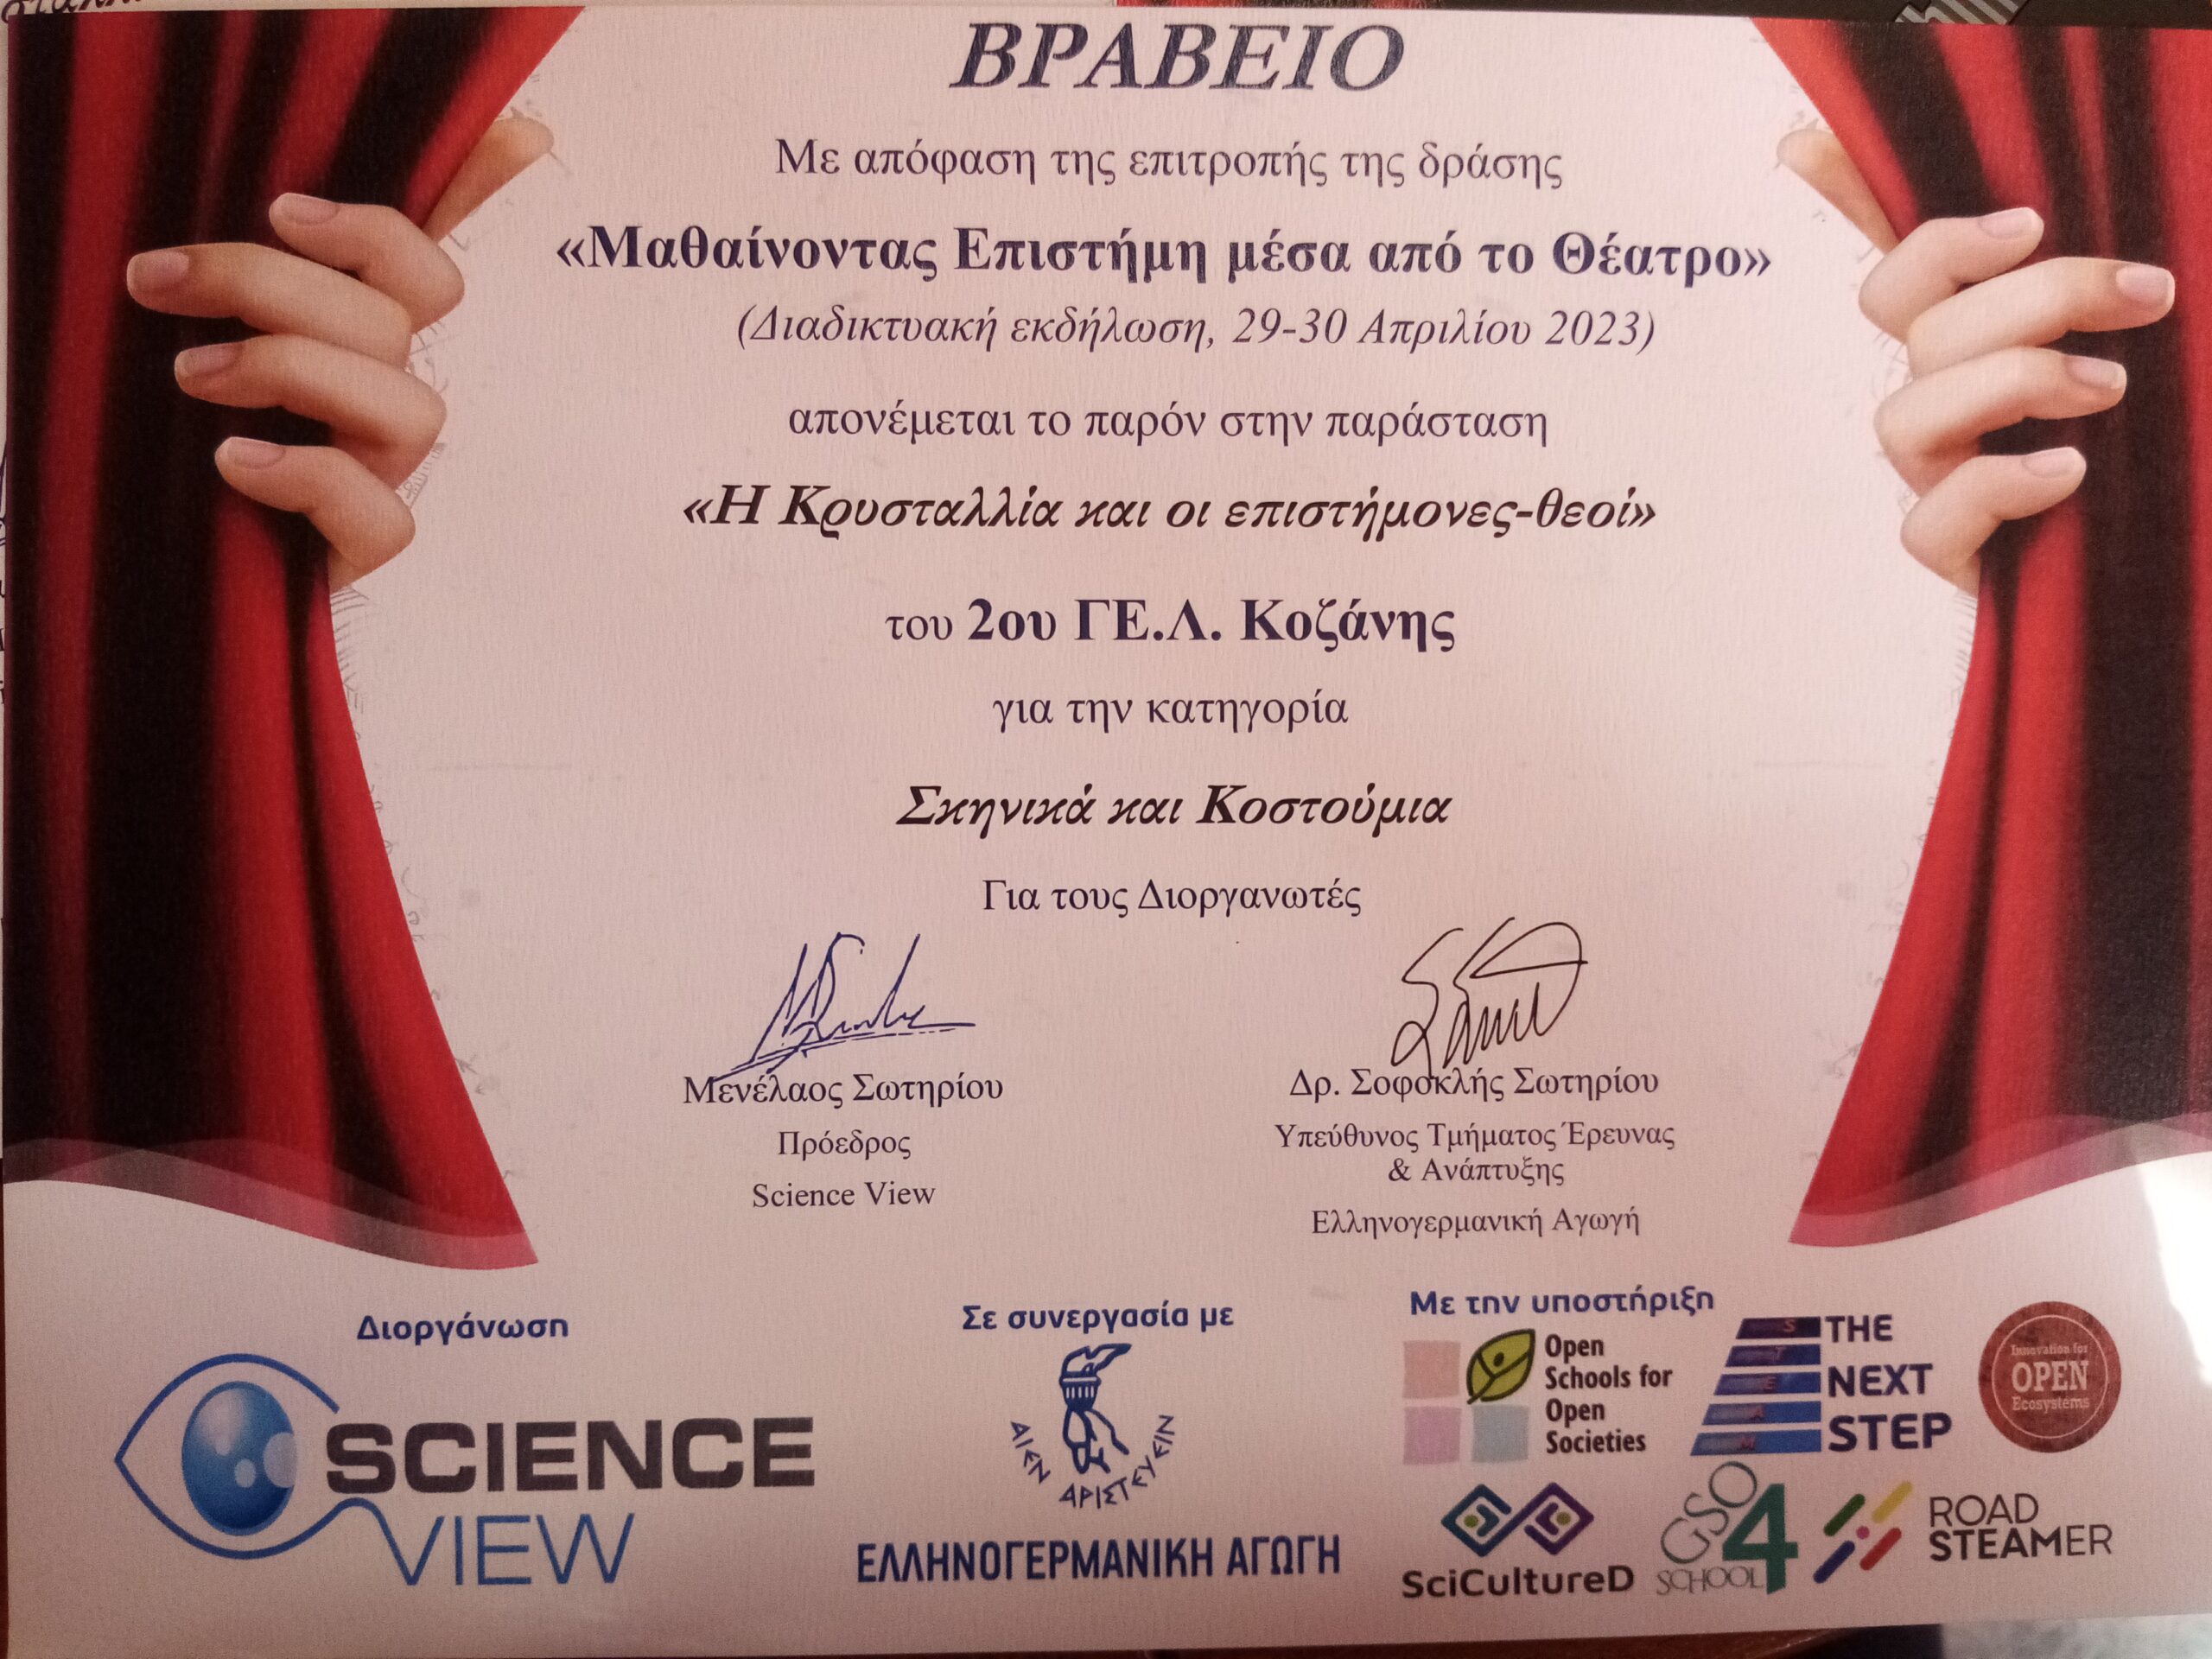 Δύο βραβεία για τη συμμετοχή μας στη δράση “Μαθαίνω επιστήμη μέσα από το θέατρο”